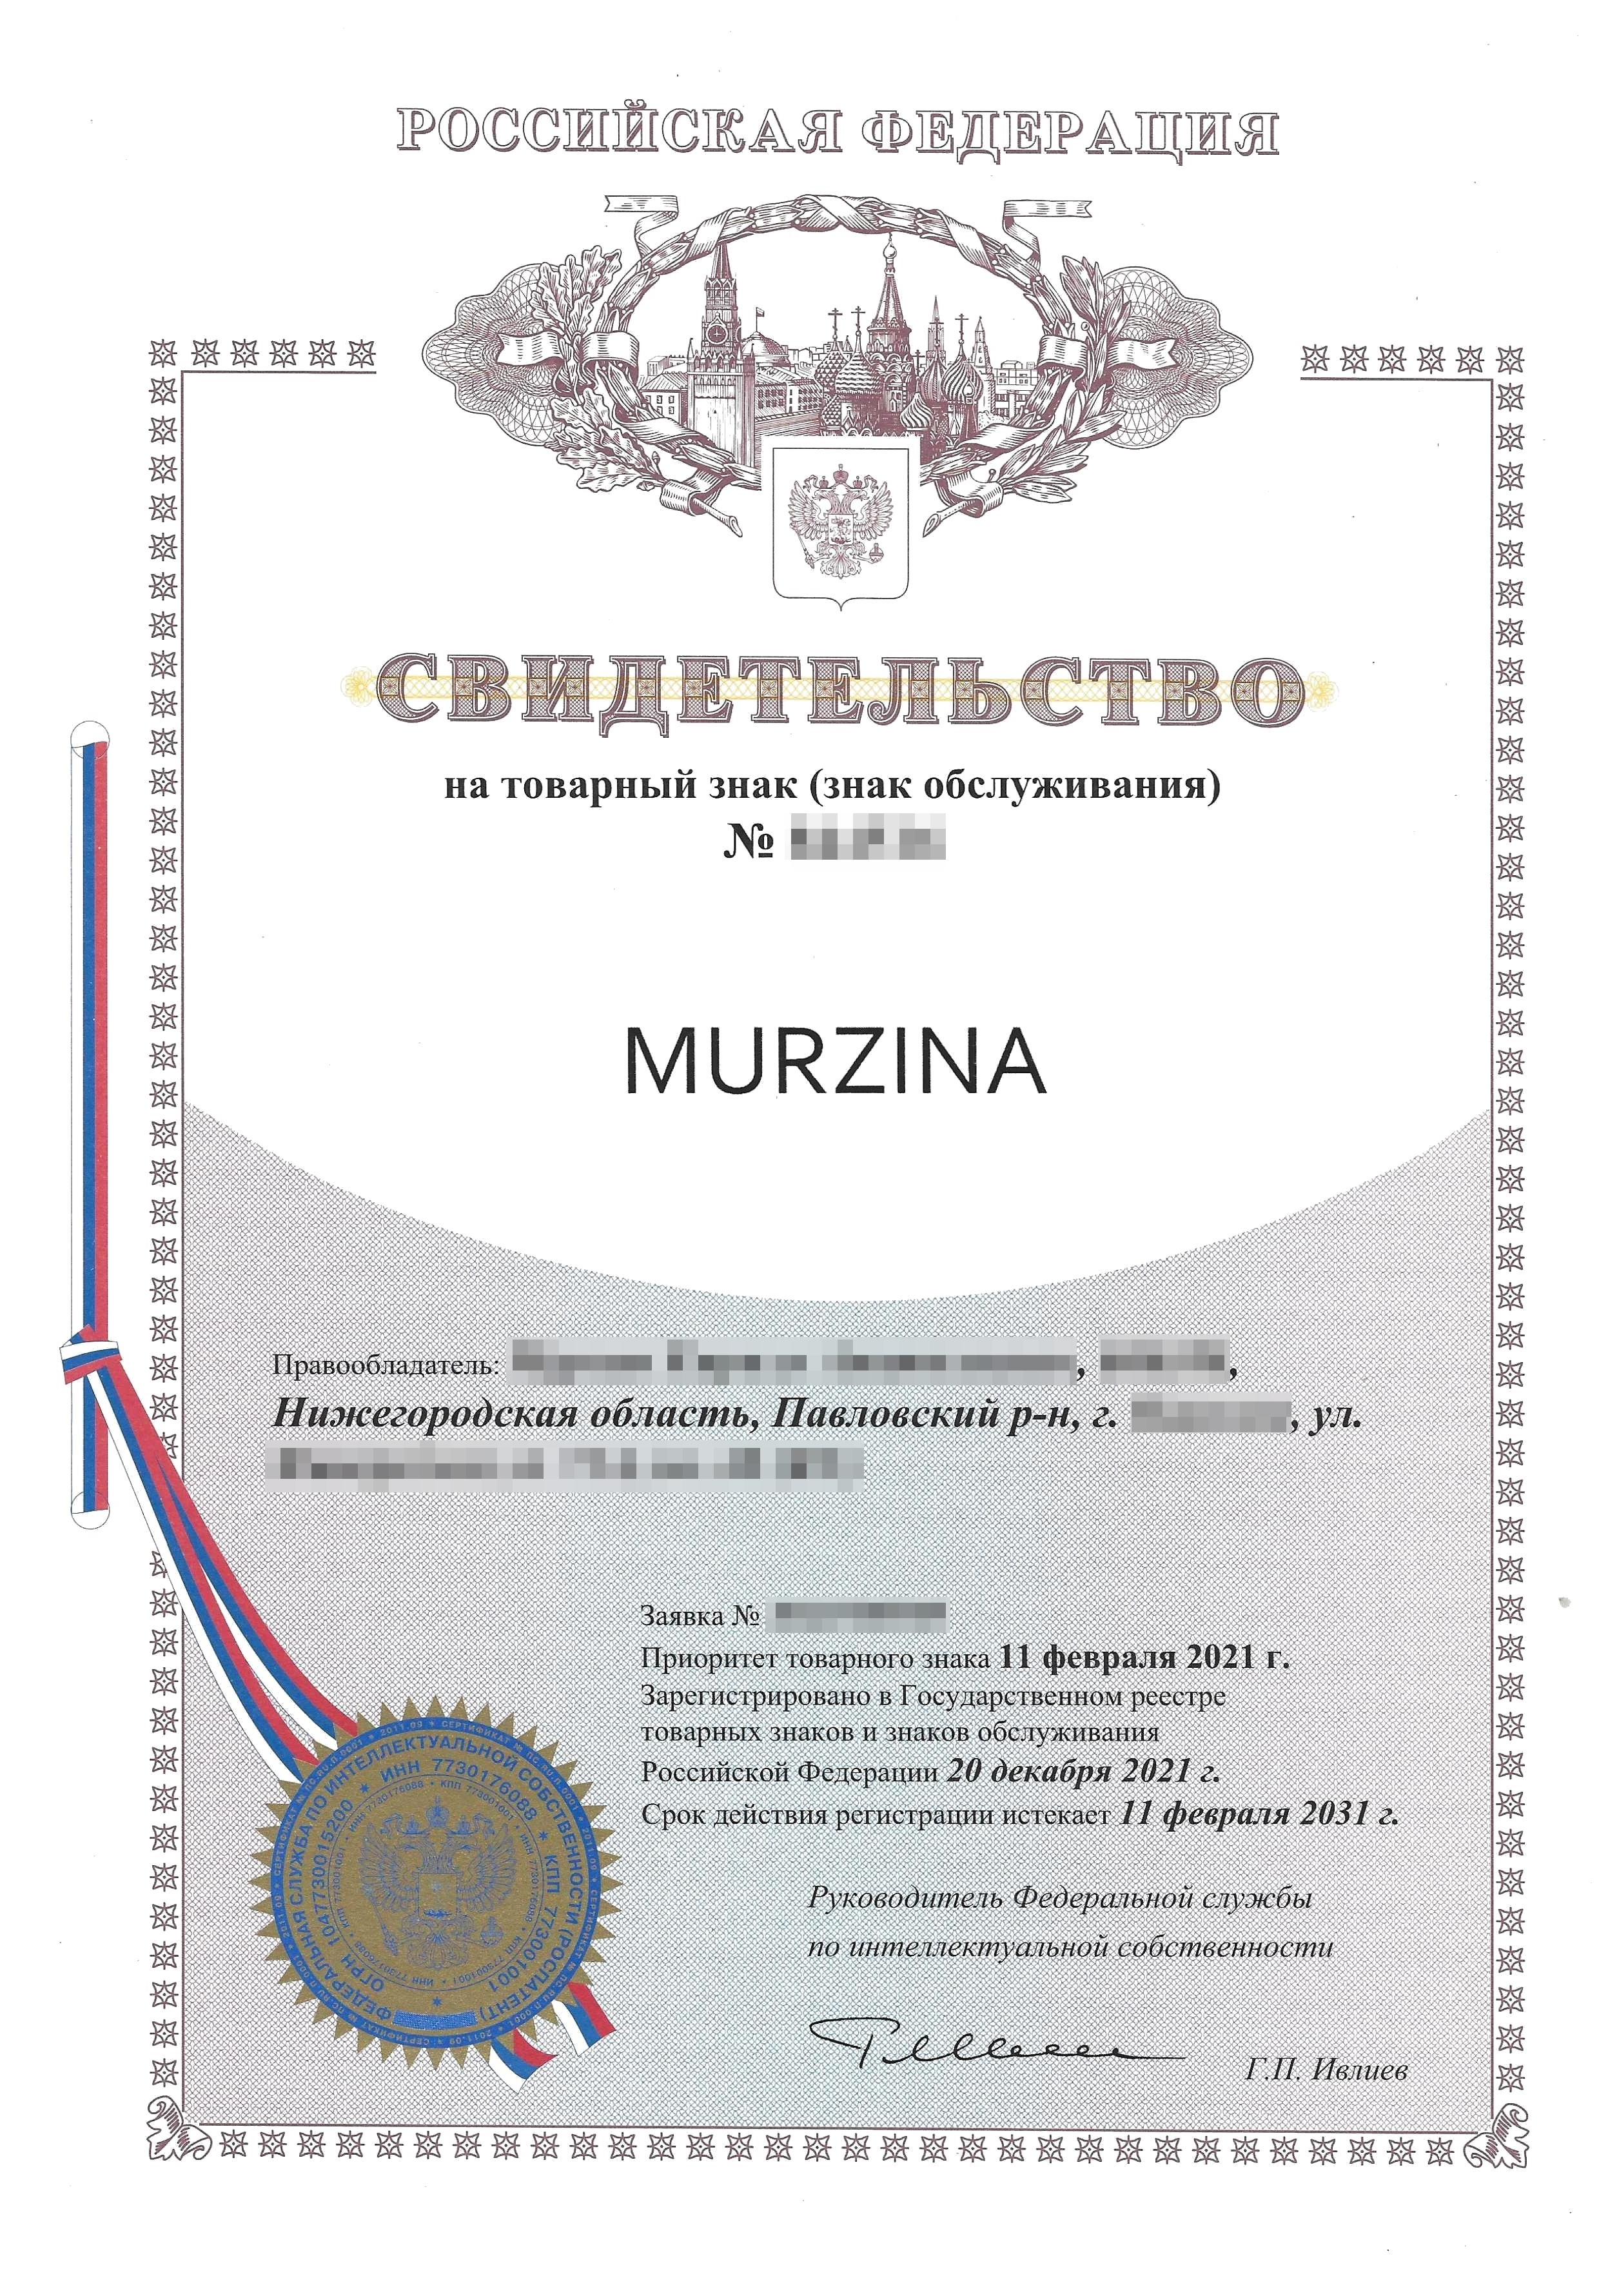 Несколько примеров регистраций товарных знаков моих заказчиков, которые работают на маркетплейсах: Murzina — это словесный товарный знак на латинице, бренд женского нижнего белья